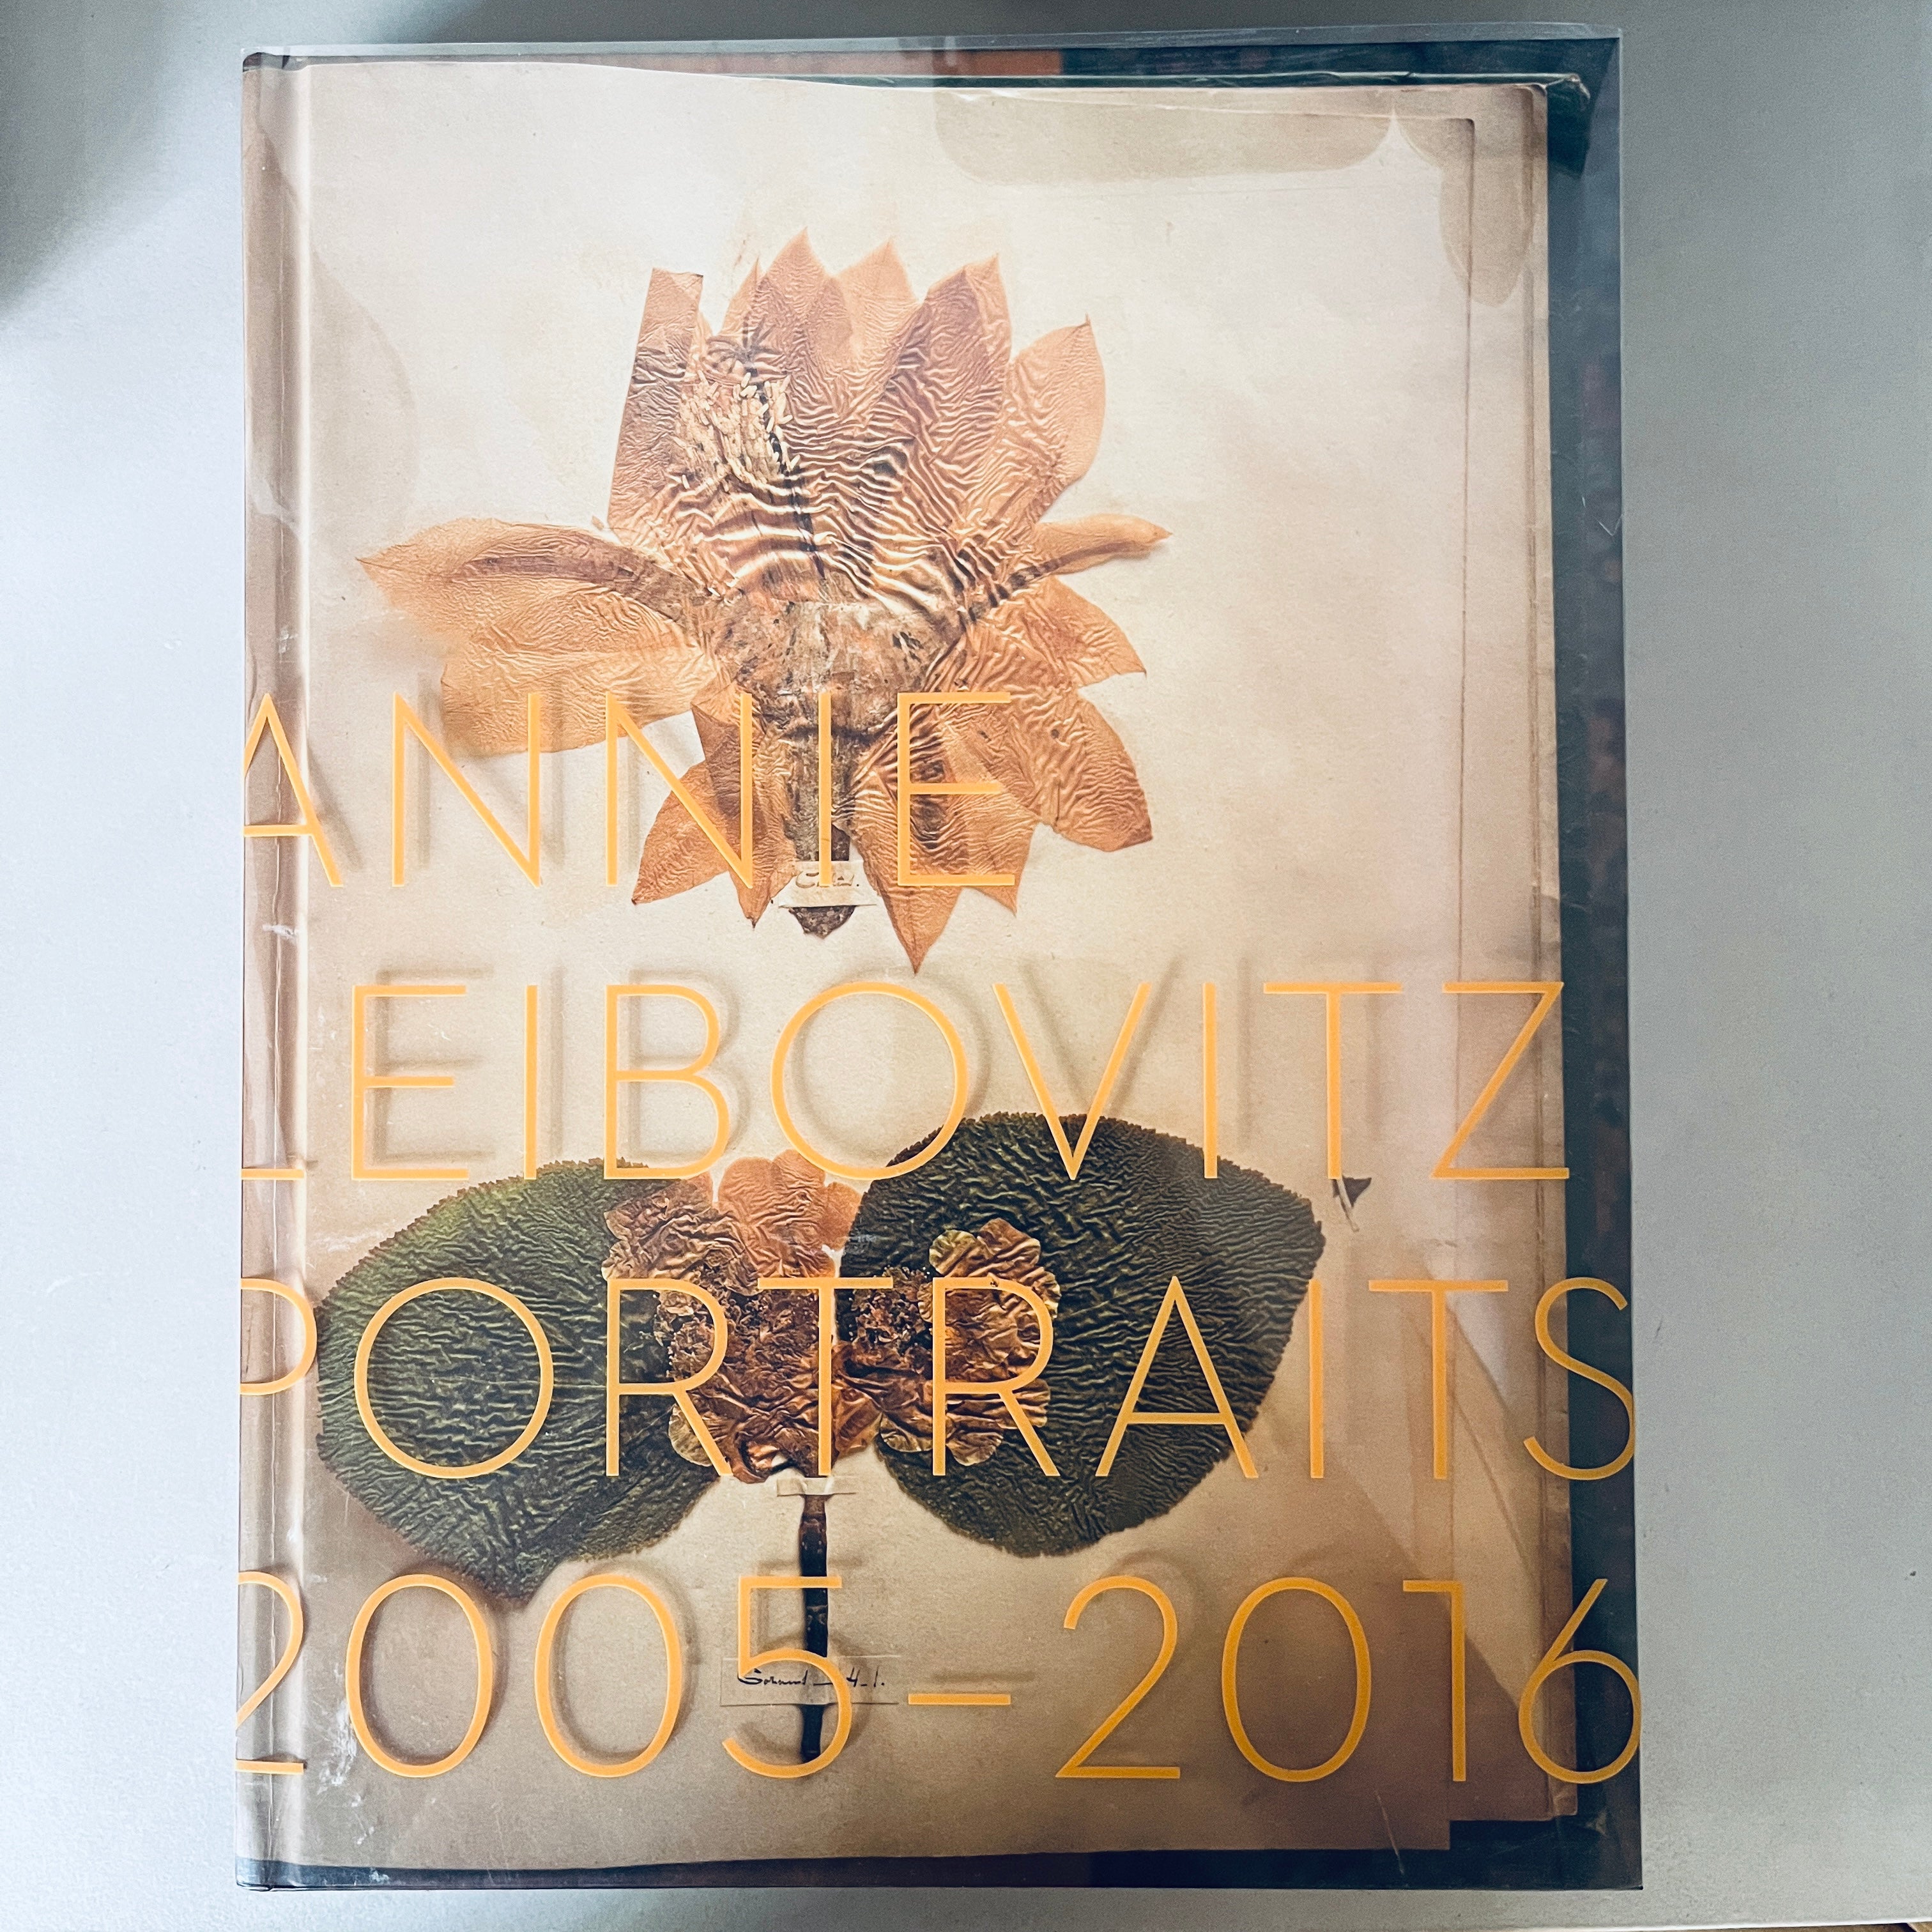 Annie Leibovitz, Portraits 2005-2016 by Annie Leibovitz